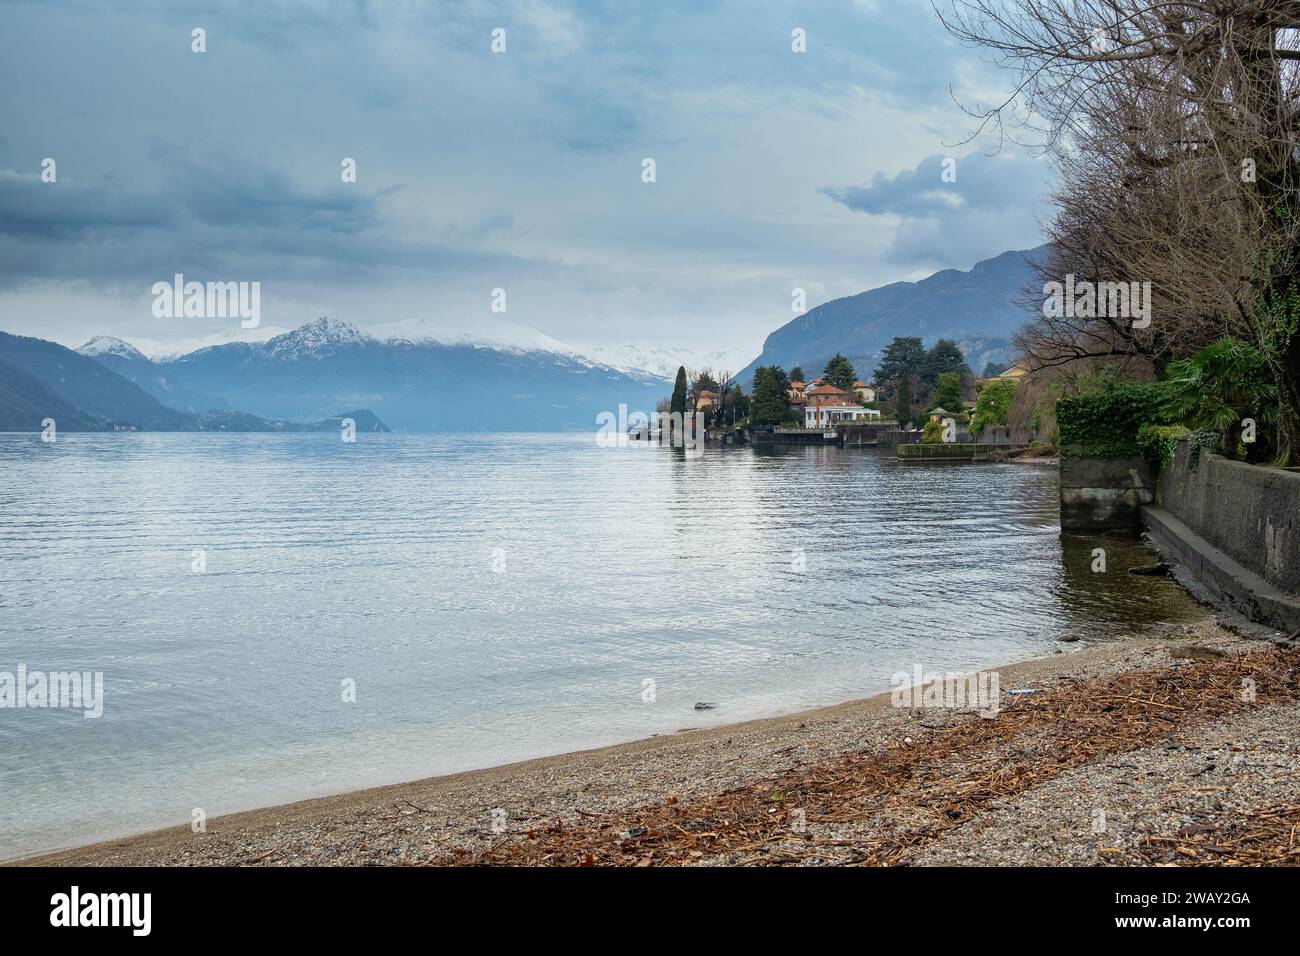 Am See des romantischen Dorfes Mandello del Lario, Comer See, Seenregion, Lombardei, Italien Stockfoto